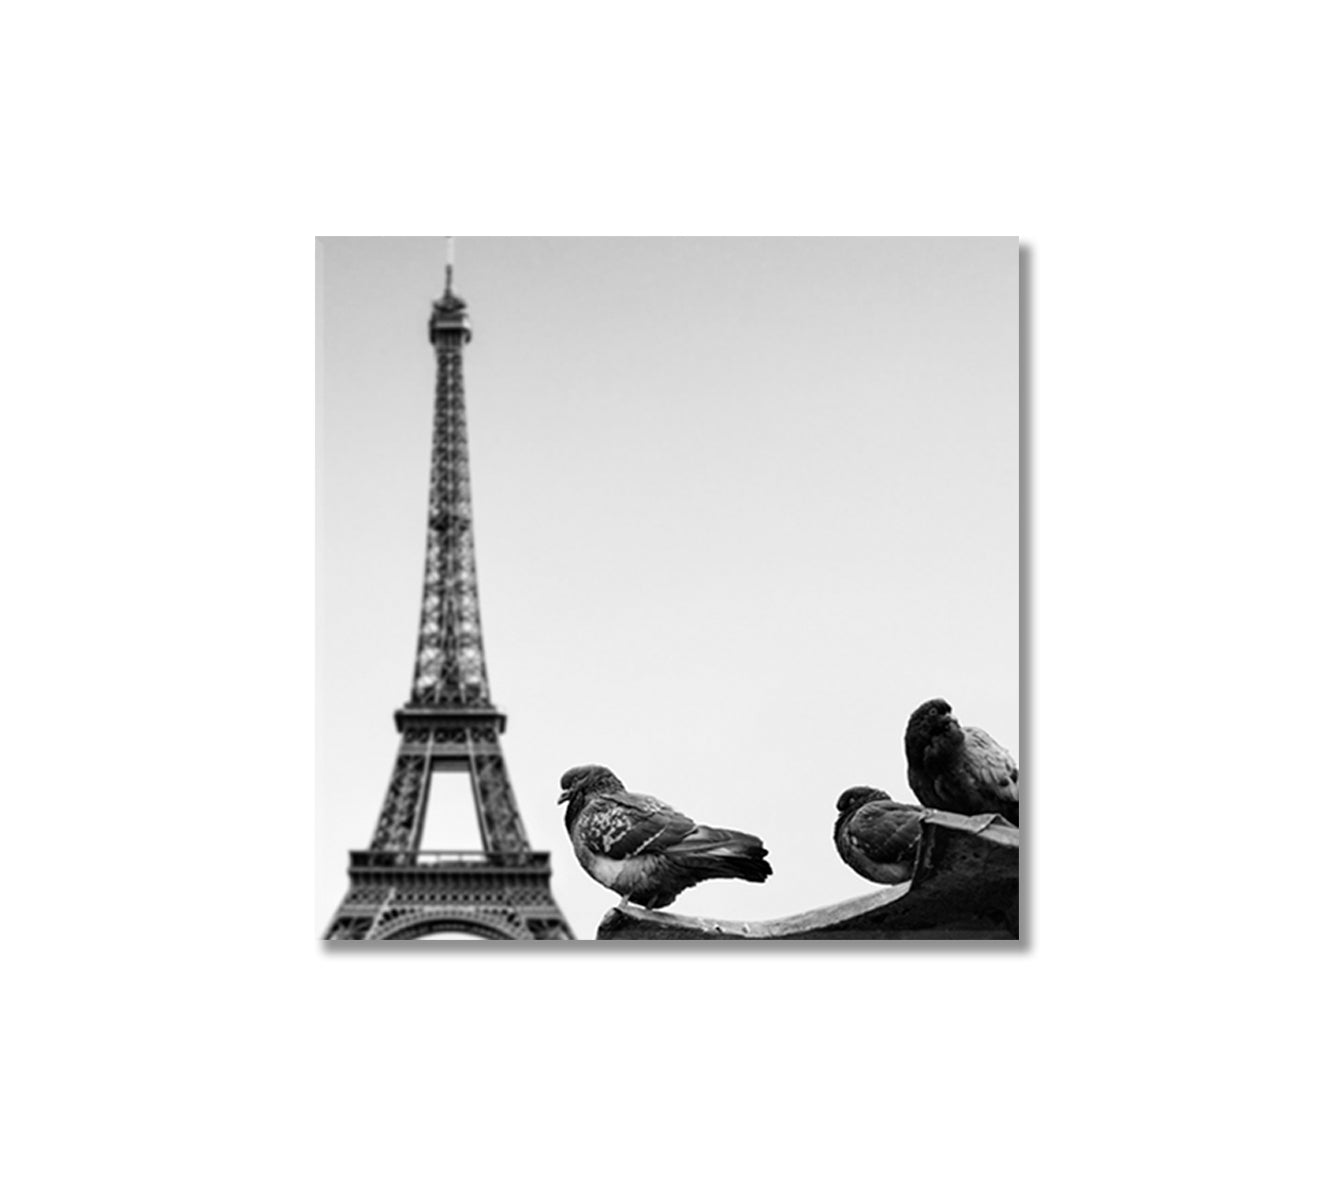 Pigeons Against Eiffel Tower Paris France Canvas Print-Canvas Print-CetArt-1 panel-12x12 inches-CetArt